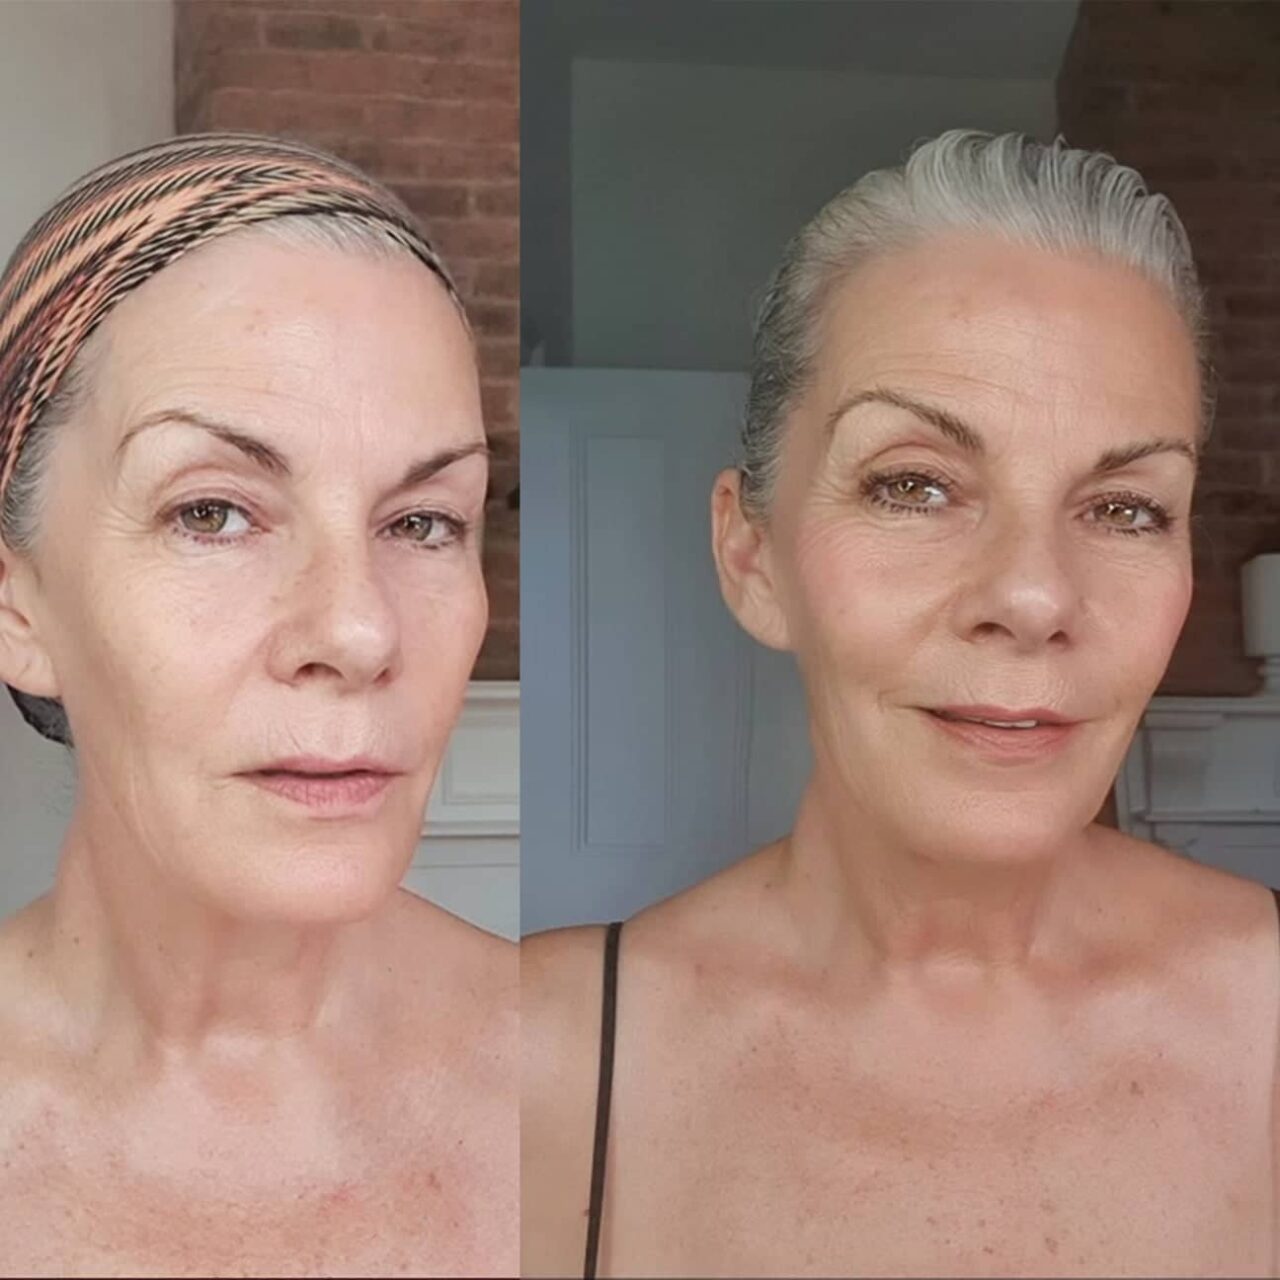 Før og efter billeder af en kvinde med naturligt gråt hår, der viser hendes revitaliserede udseende og følelse af velvære, takket være Gradual Tan 150 ml.